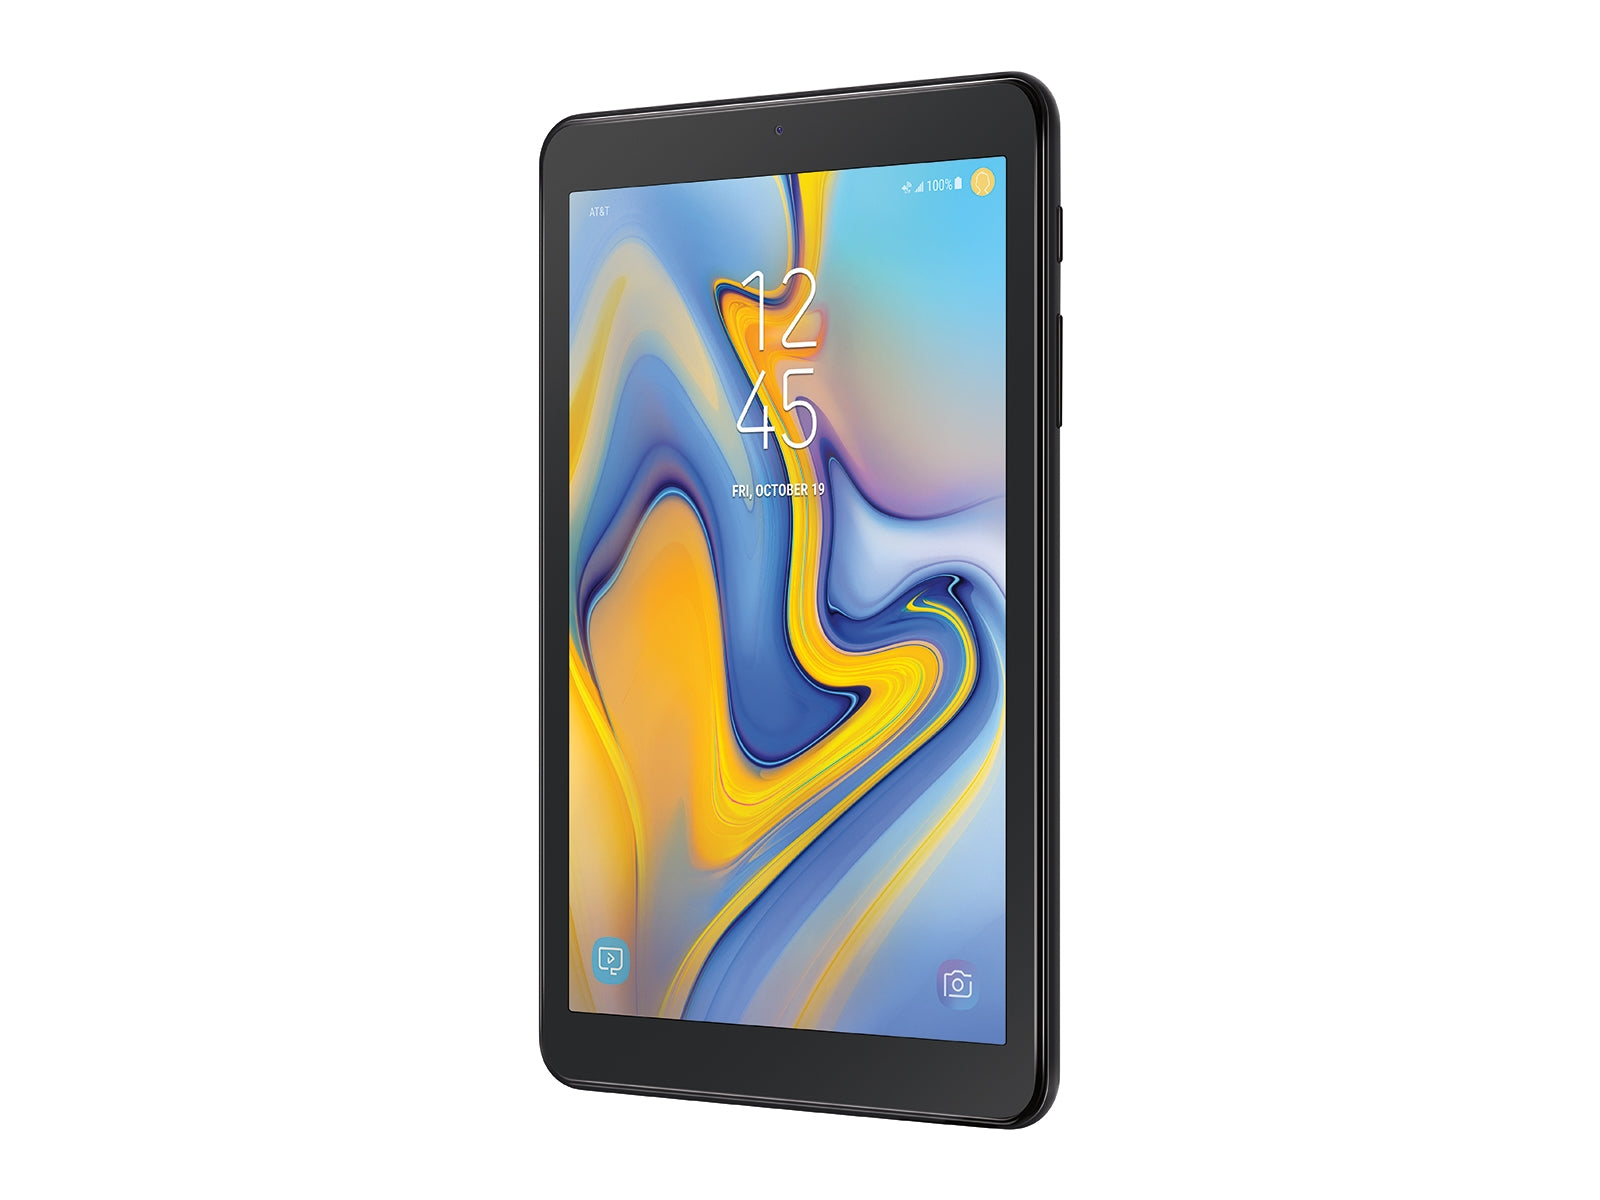 Samsung SM-T387AZKAATT-RBC 8.0" Galaxy Tab A 32GB Wifi 4G LTE Android Tablet Black - Certified Refurbished